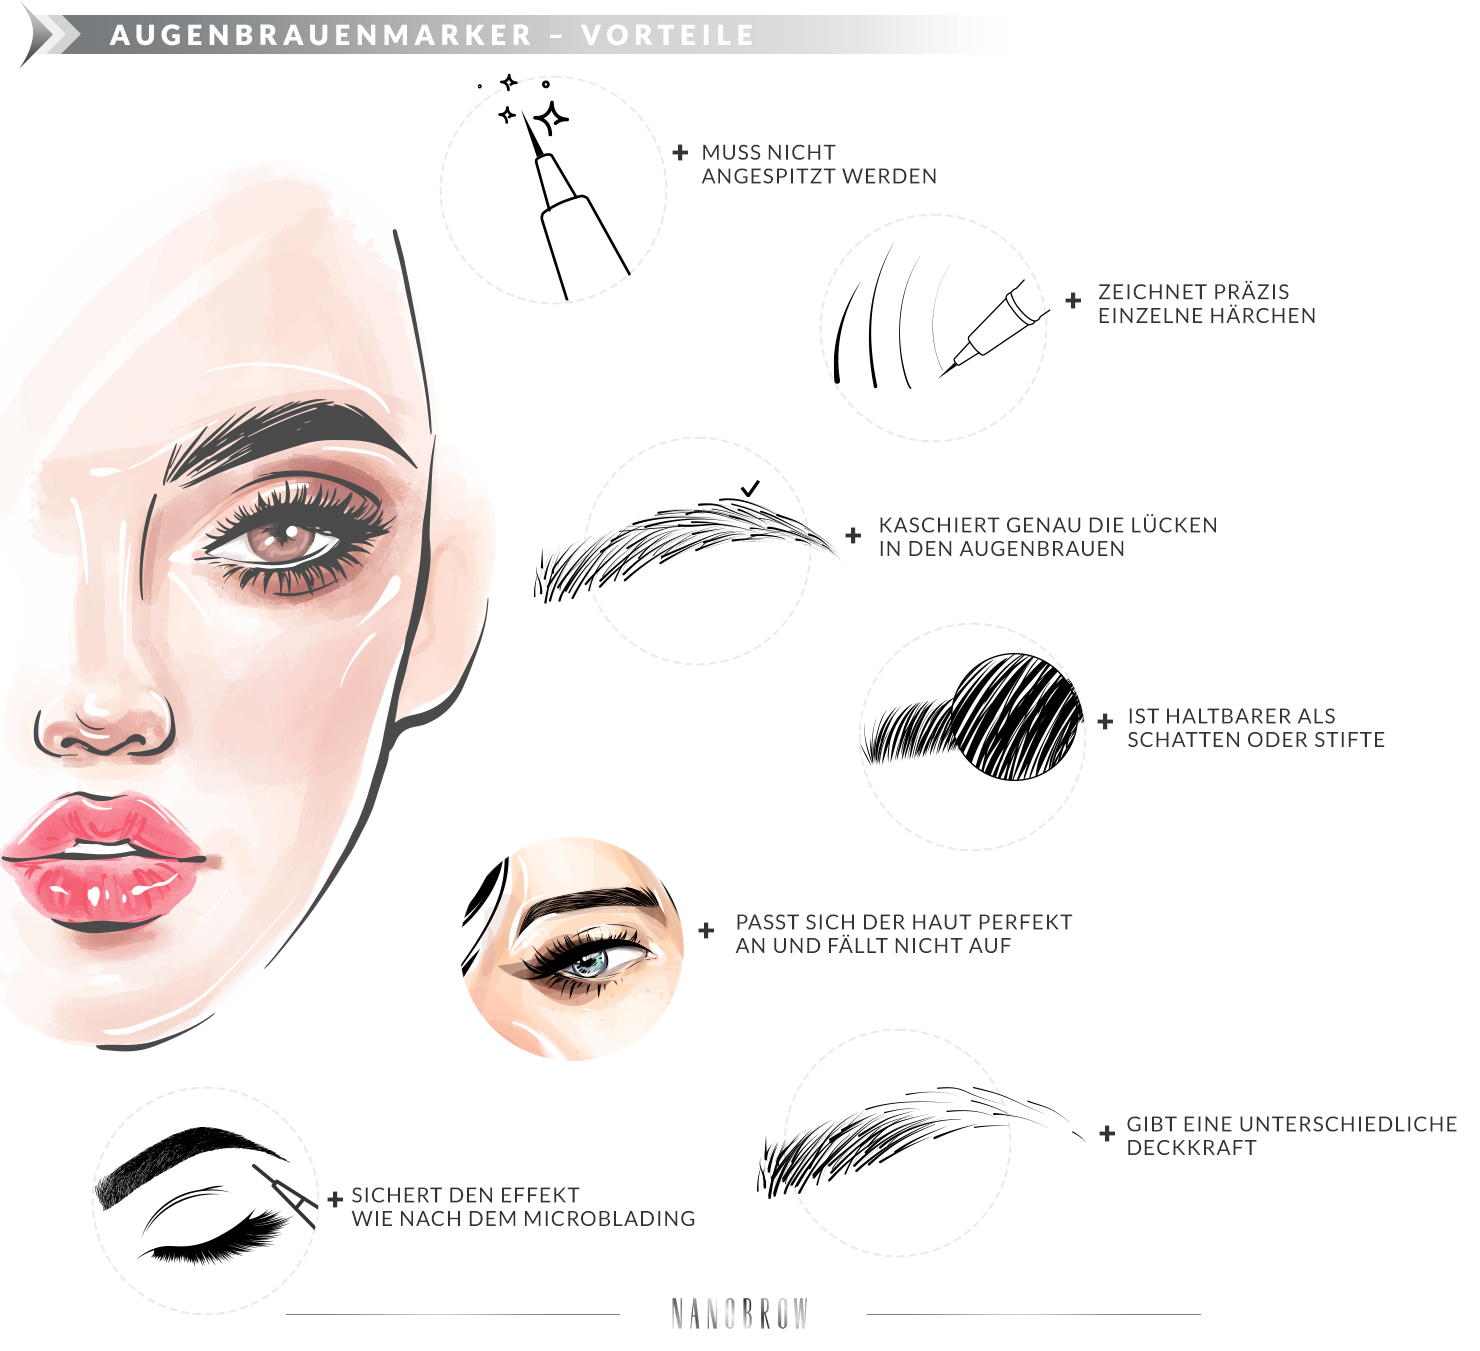 Augenbrauen Marker für perfekte make up